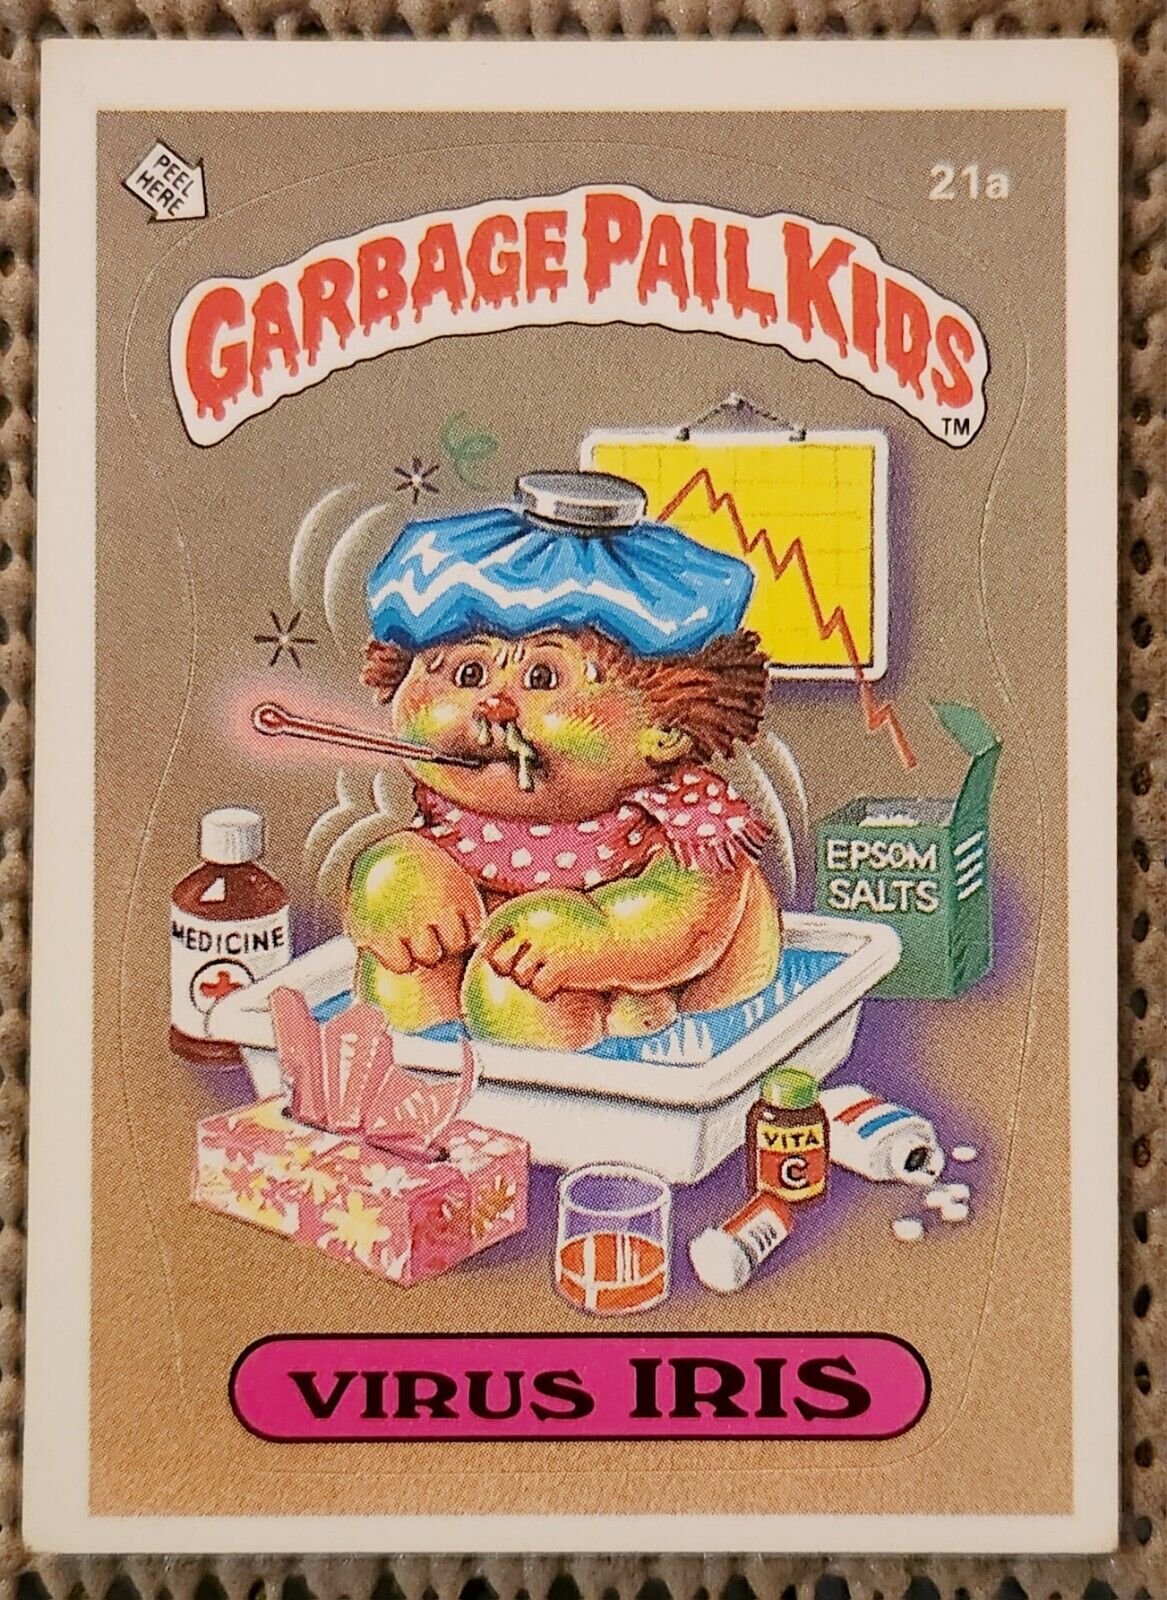 VIRUS IRIS: 1985 Topps Garbage Pail Kids 1st Series 1 (GLOSSY back) GPK OS1 #21a